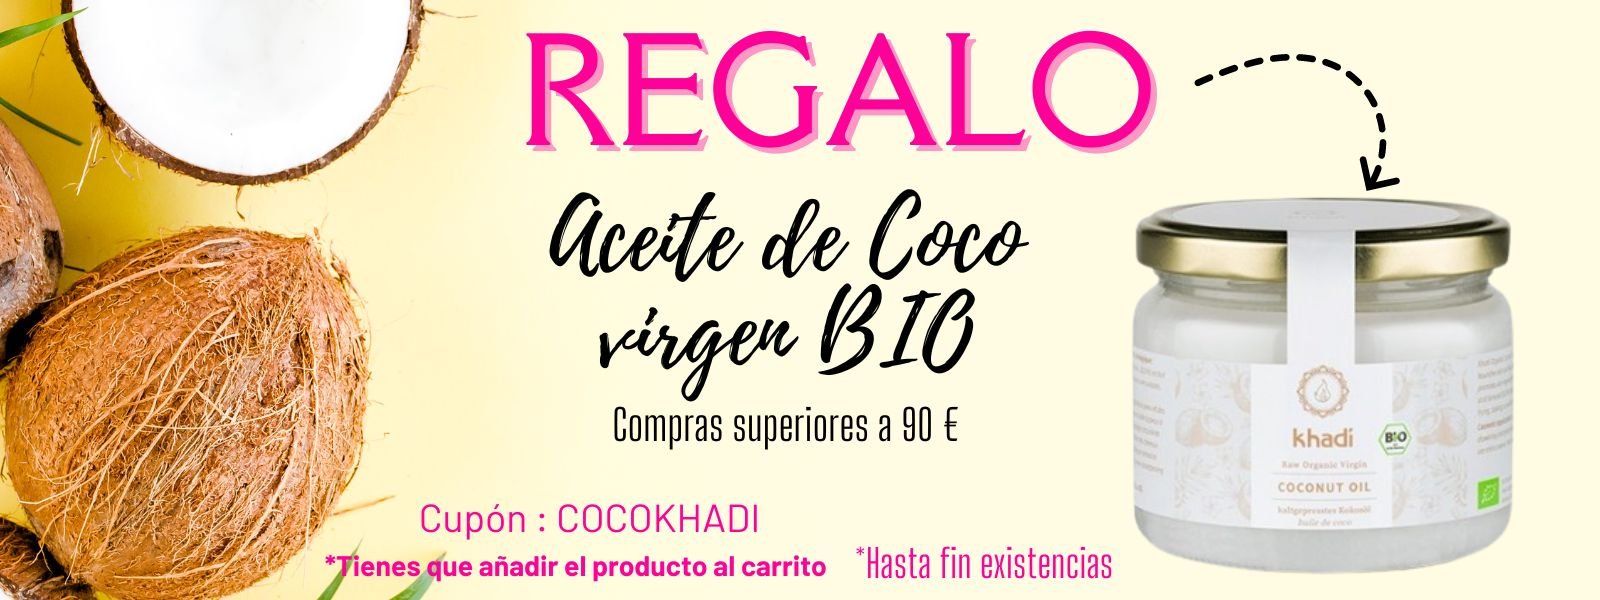 Aceite de Coco virgen BIO.jpg